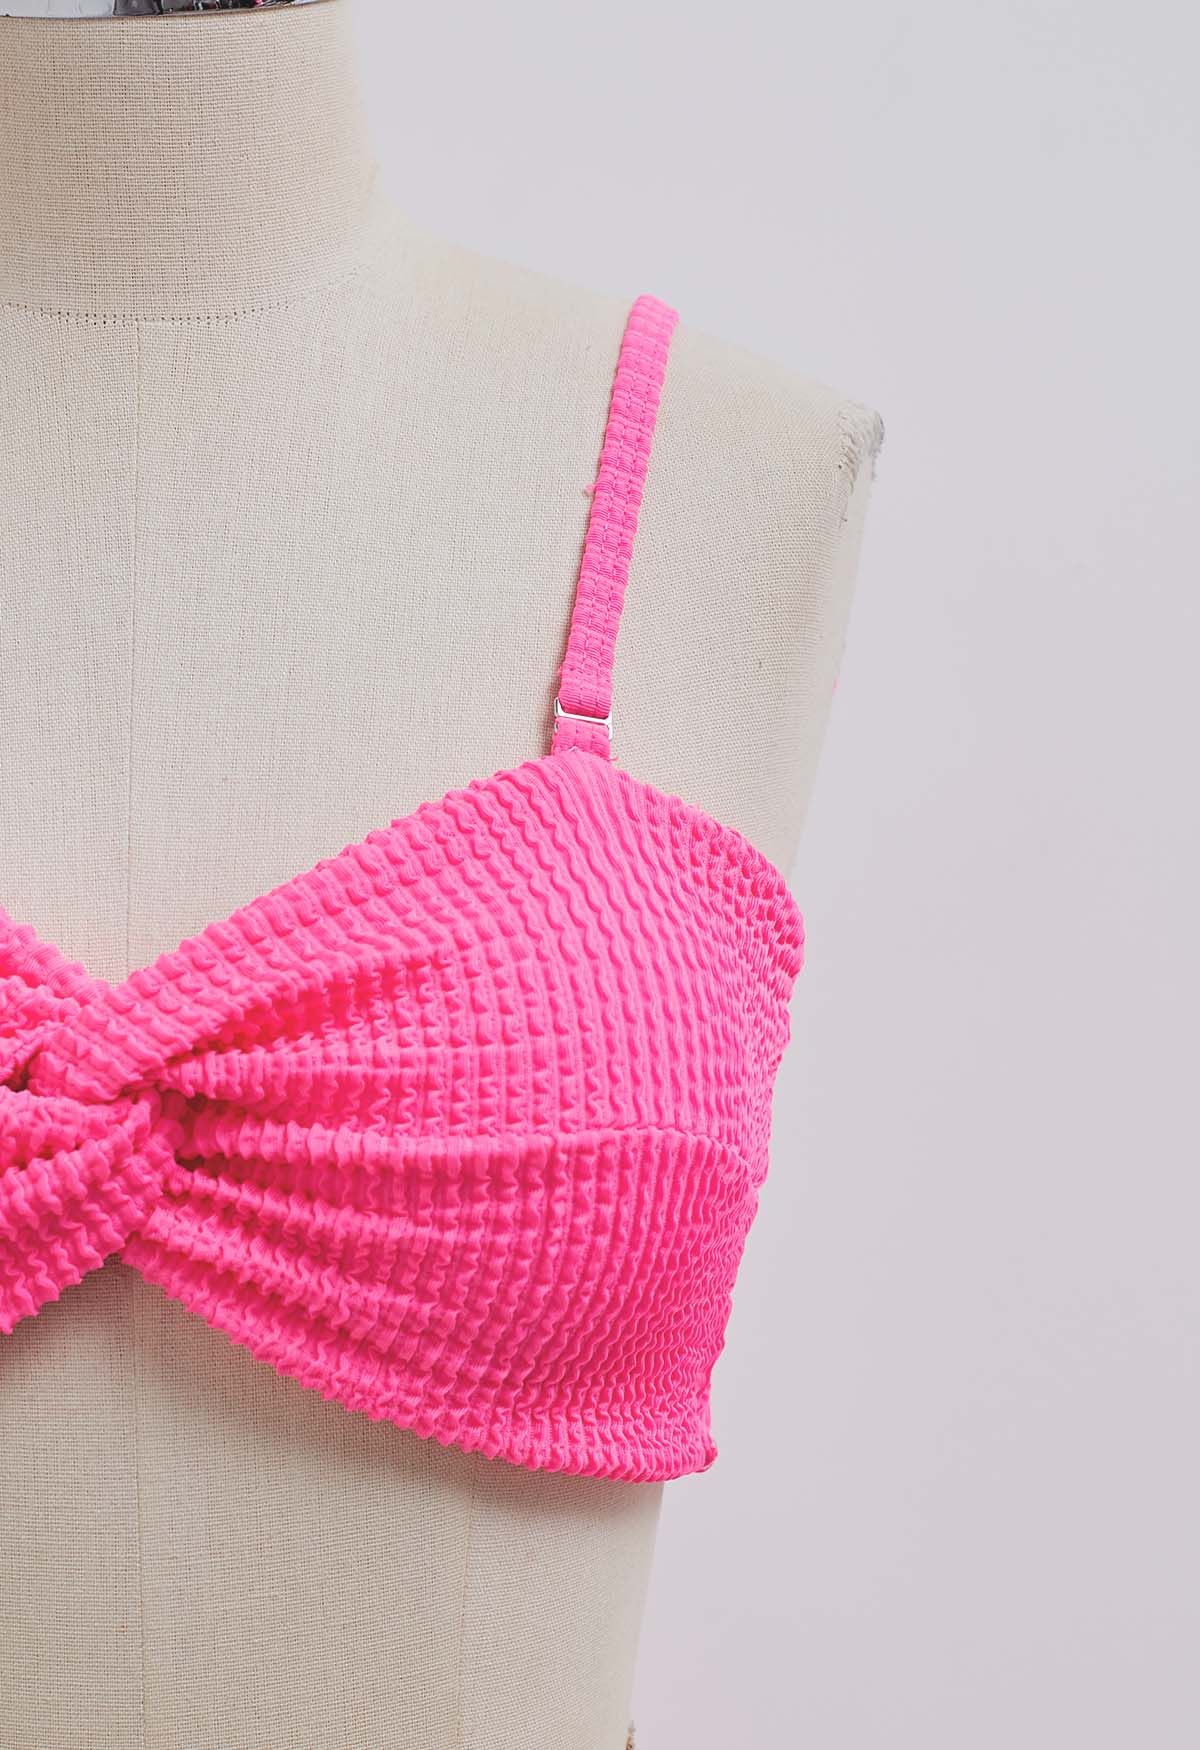 Three-Piece Wavy Texture Twist Bikini Set in Hot Pink